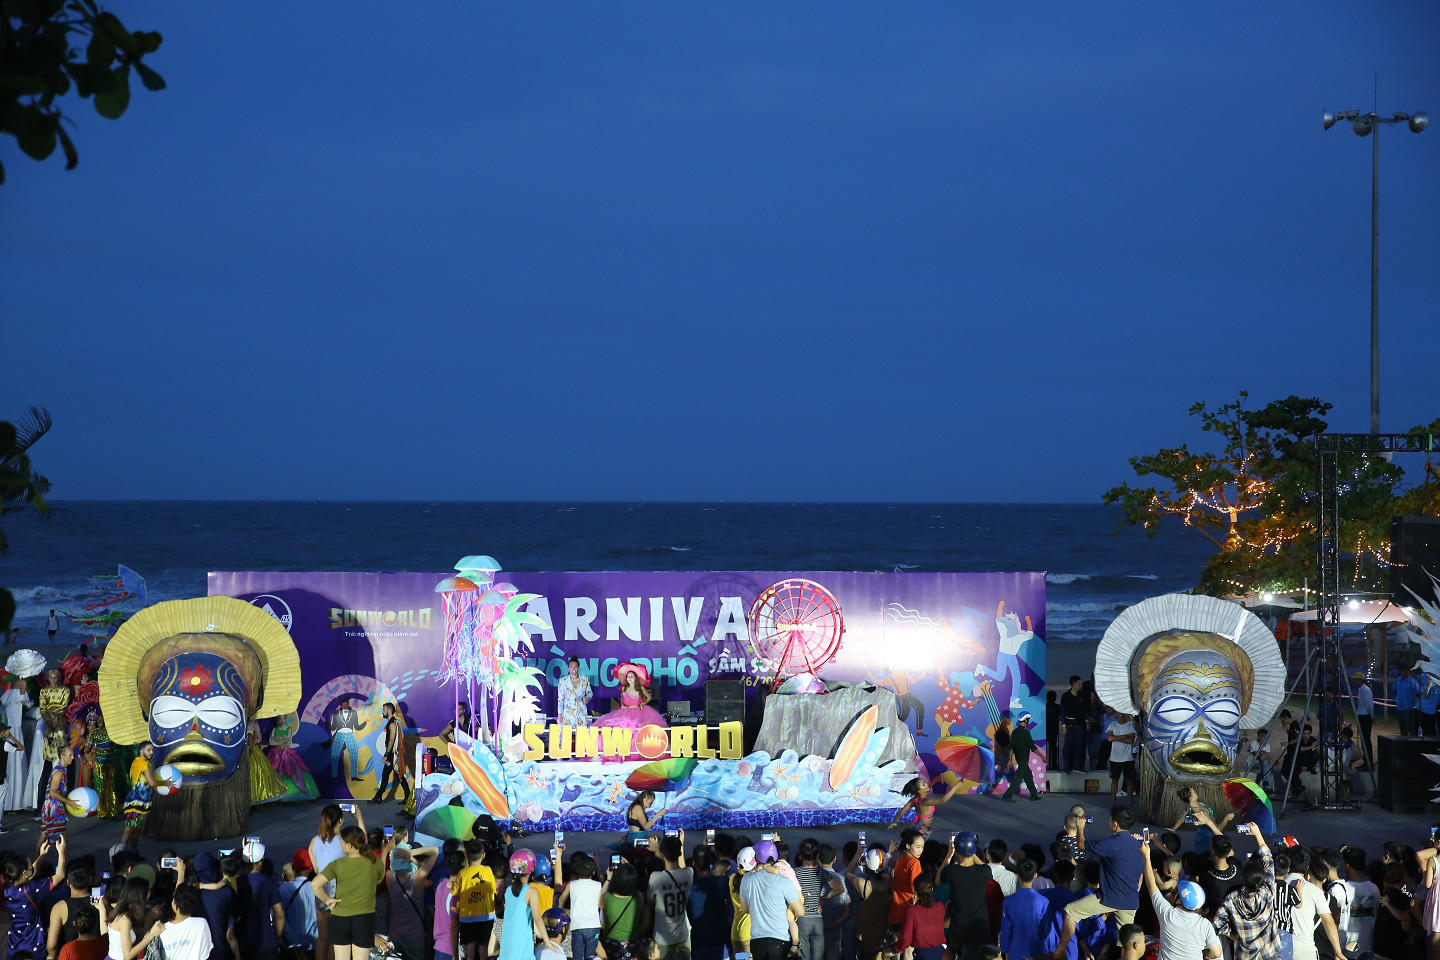 Sau Covid-19, du lịch Sầm Sơn bùng nổ với lễ hội Carnival đường phố - Ảnh 7.